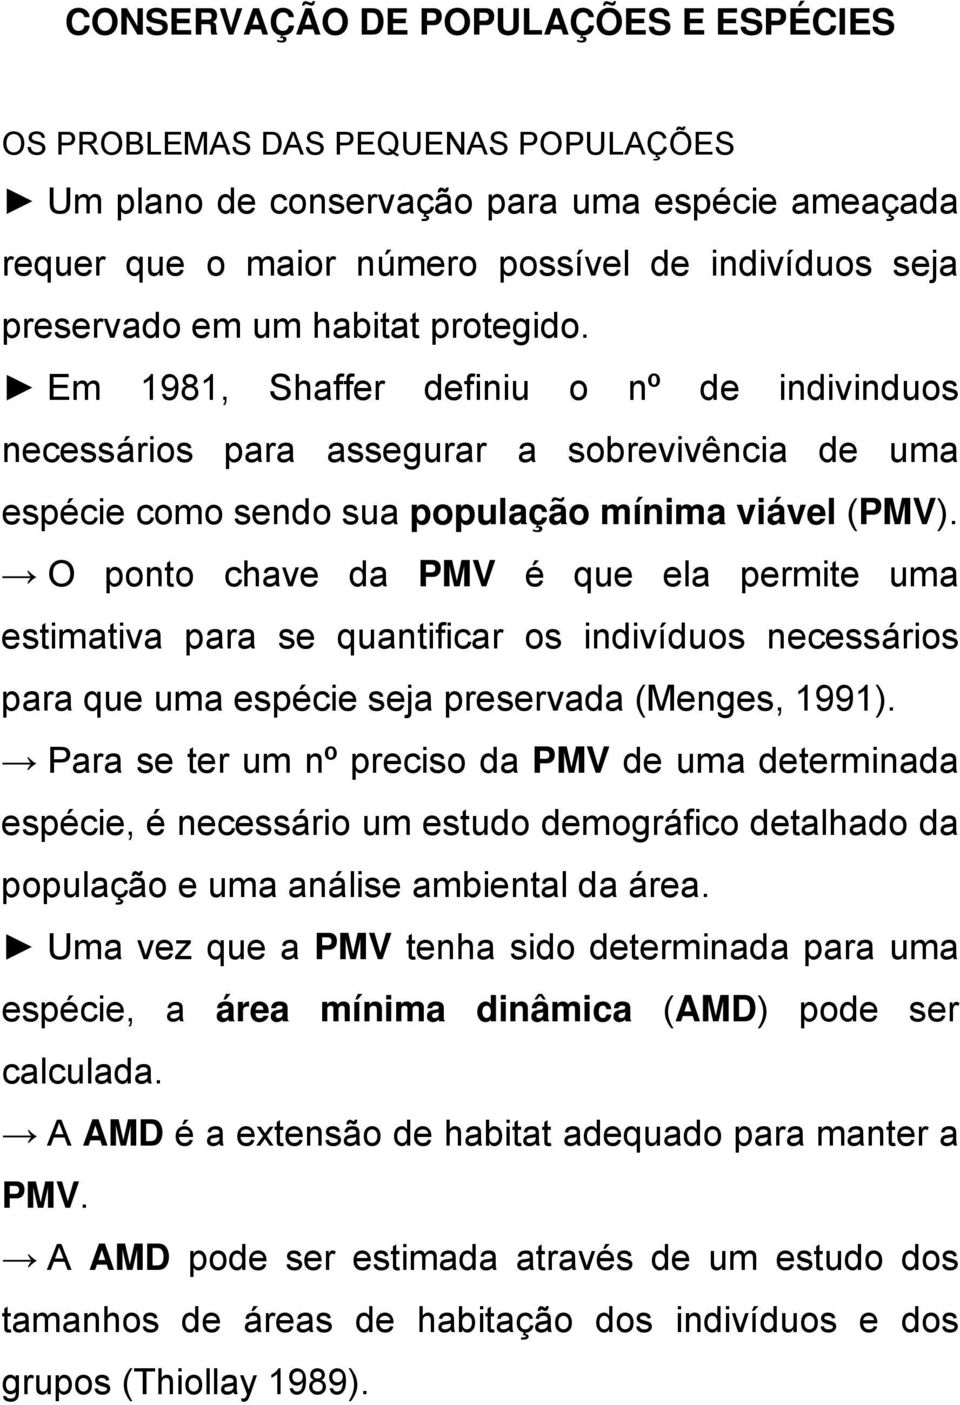 O ponto chave da PMV é que ela permite uma estimativa para se quantificar os indivíduos necessários para que uma espécie seja preservada (Menges, 1991).